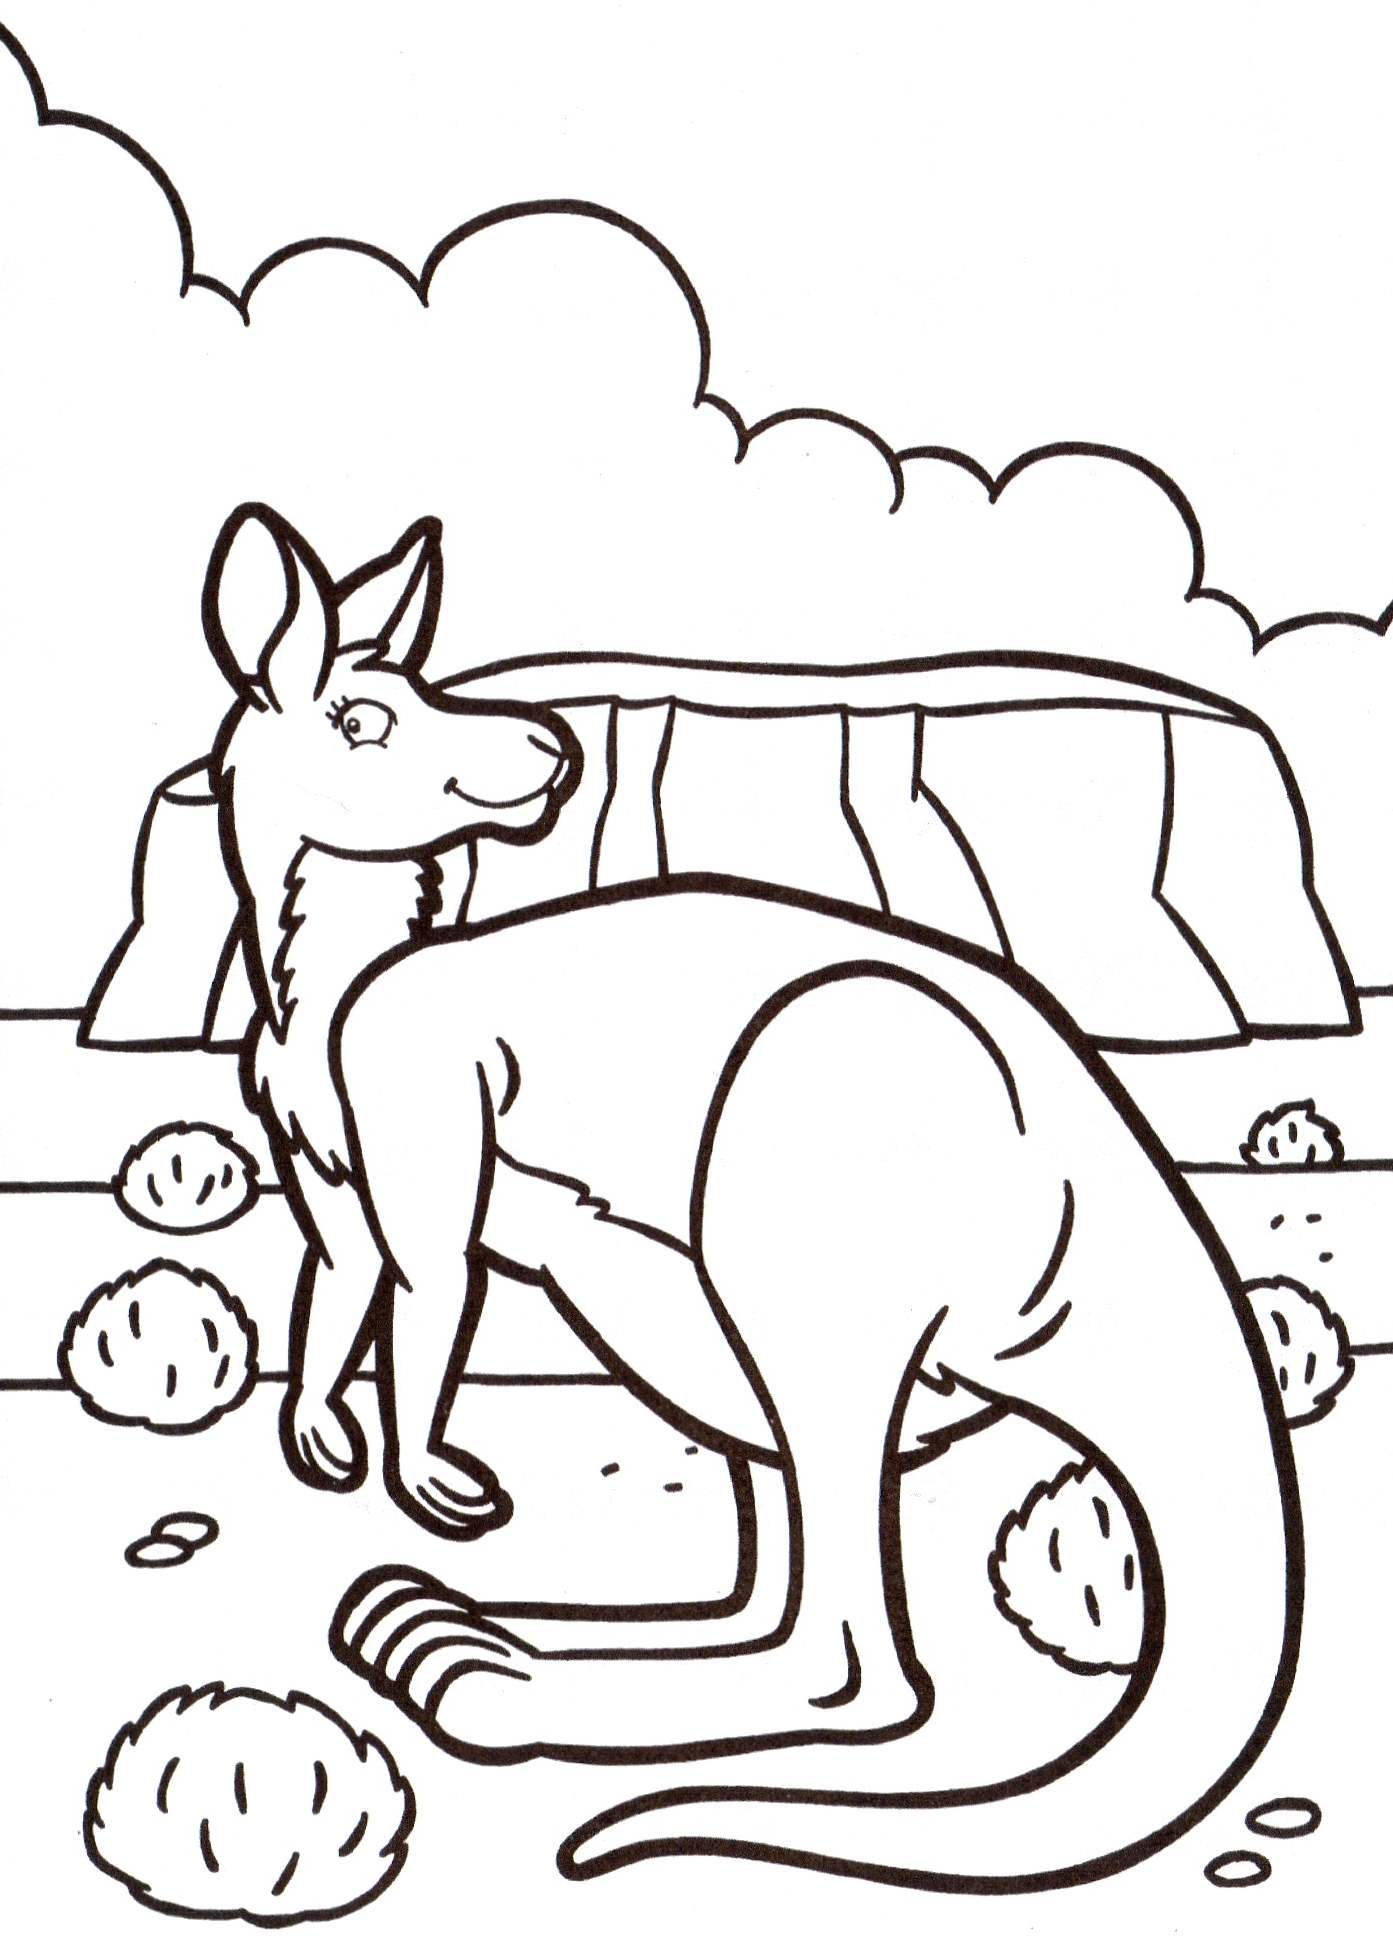 Kangaroo drawing to color, easy for kids